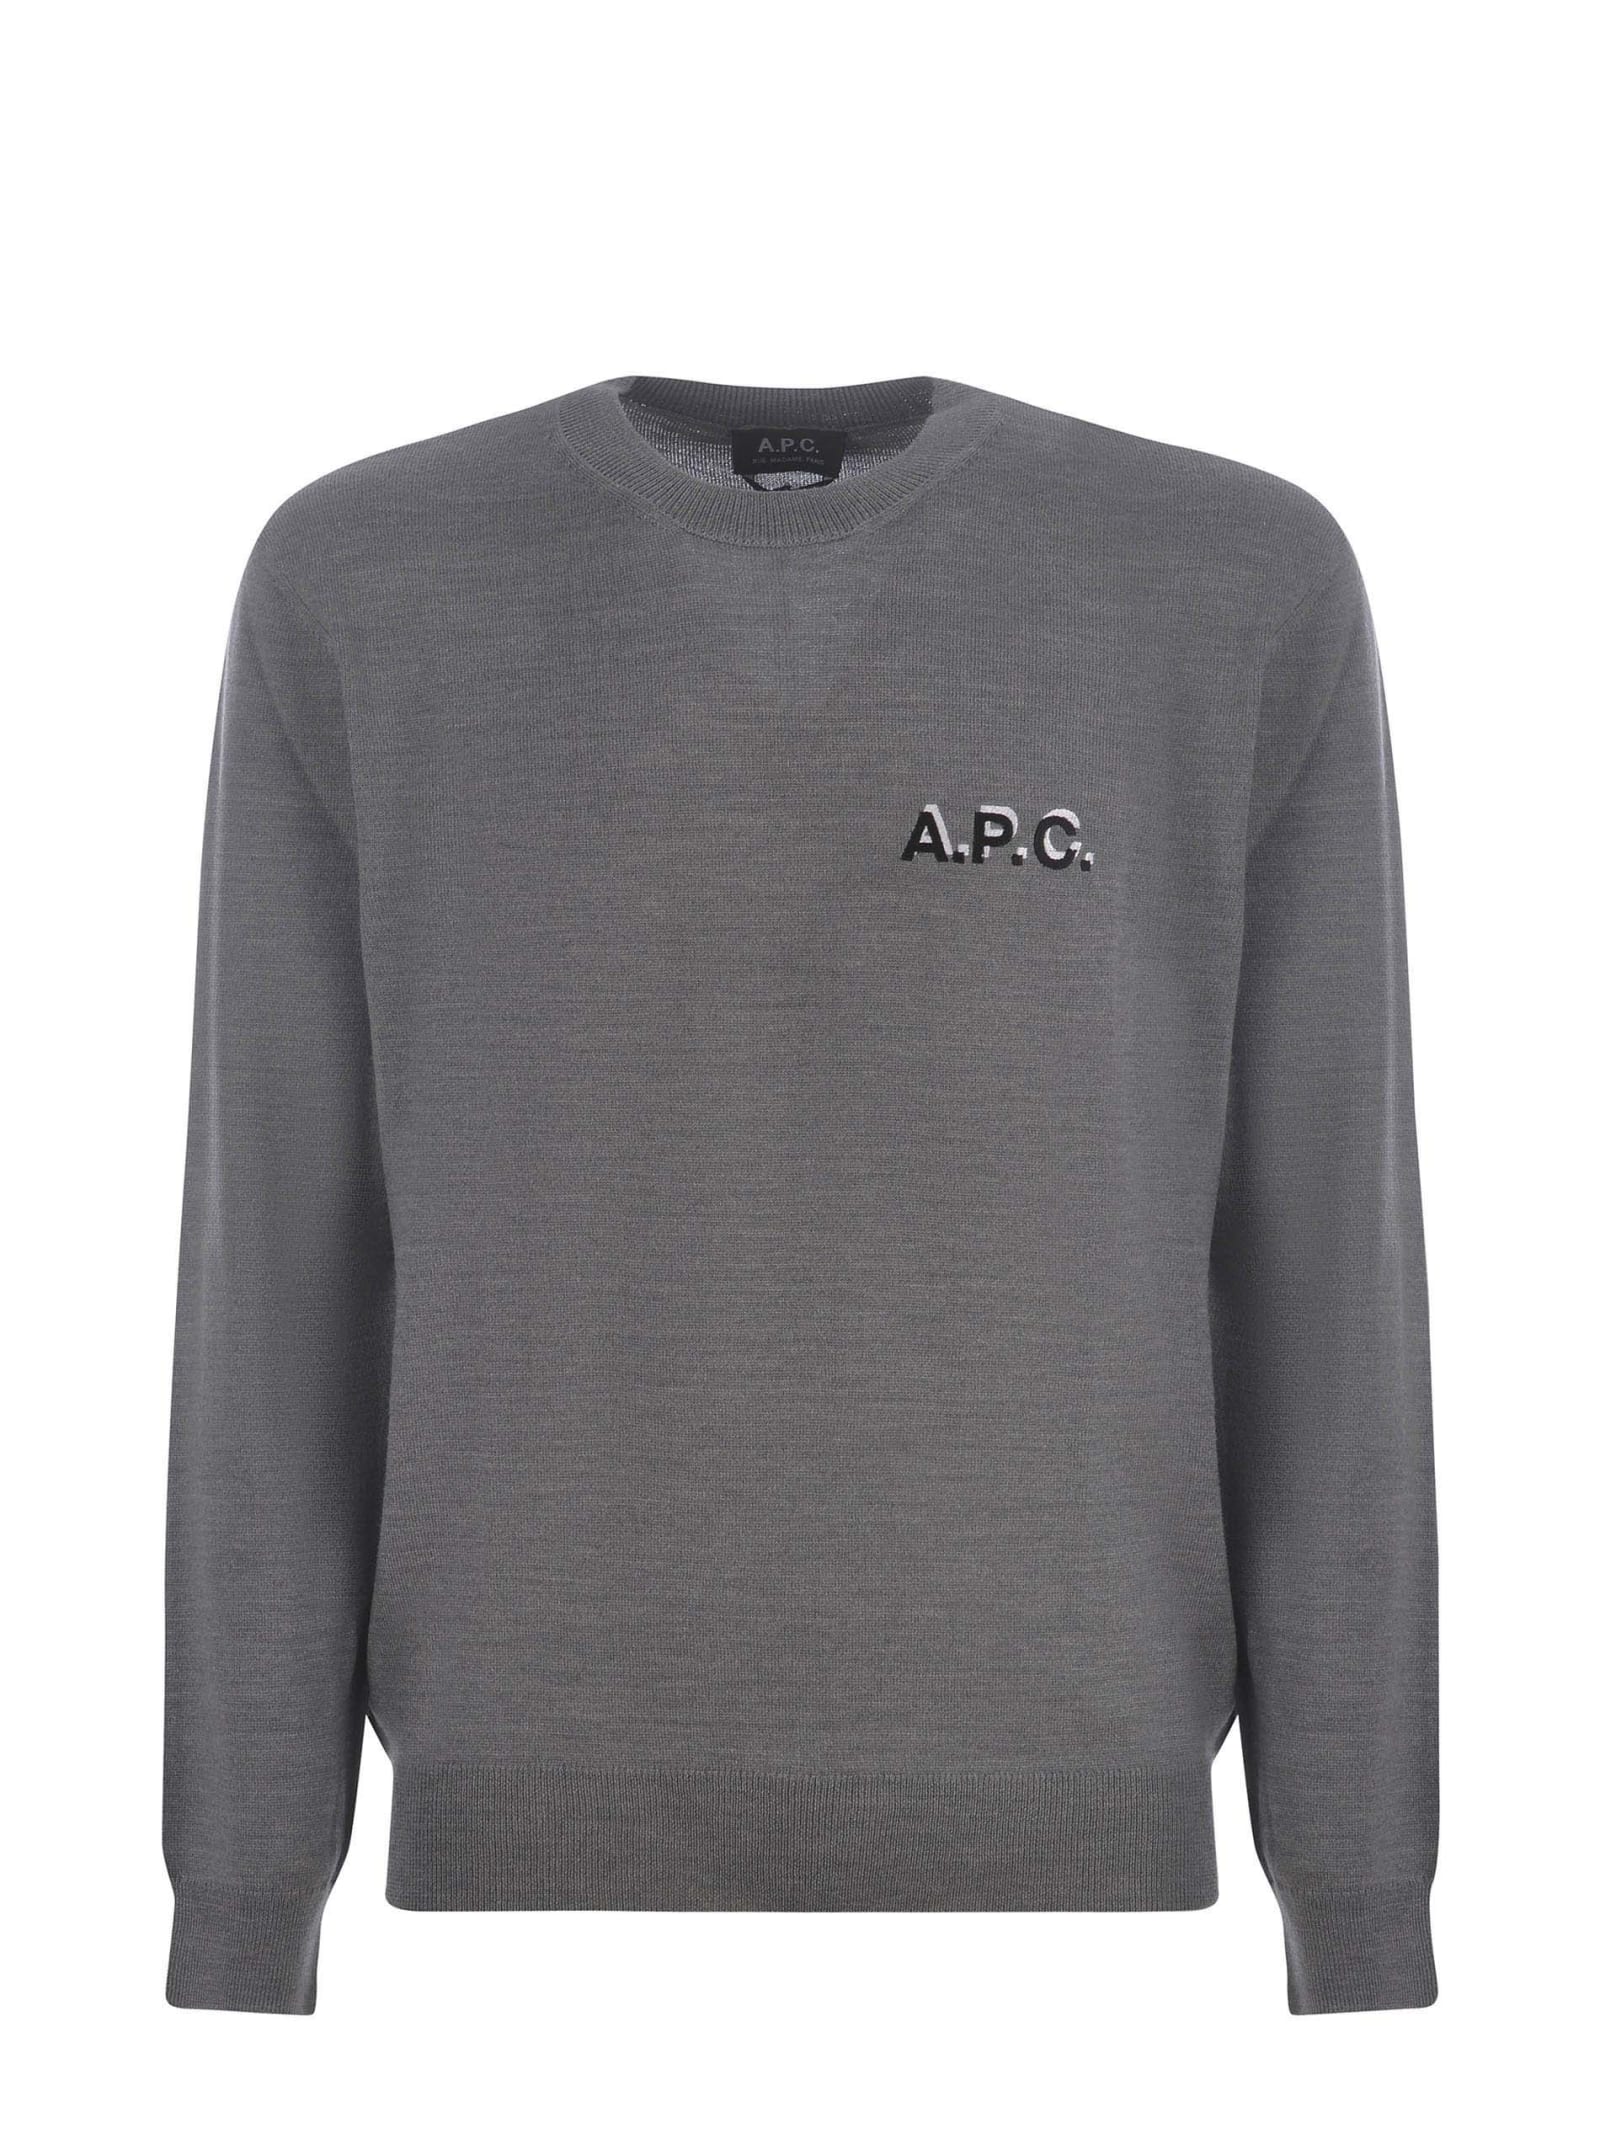 A.P.C. Sweater Apc tira Brian In Wool Blend